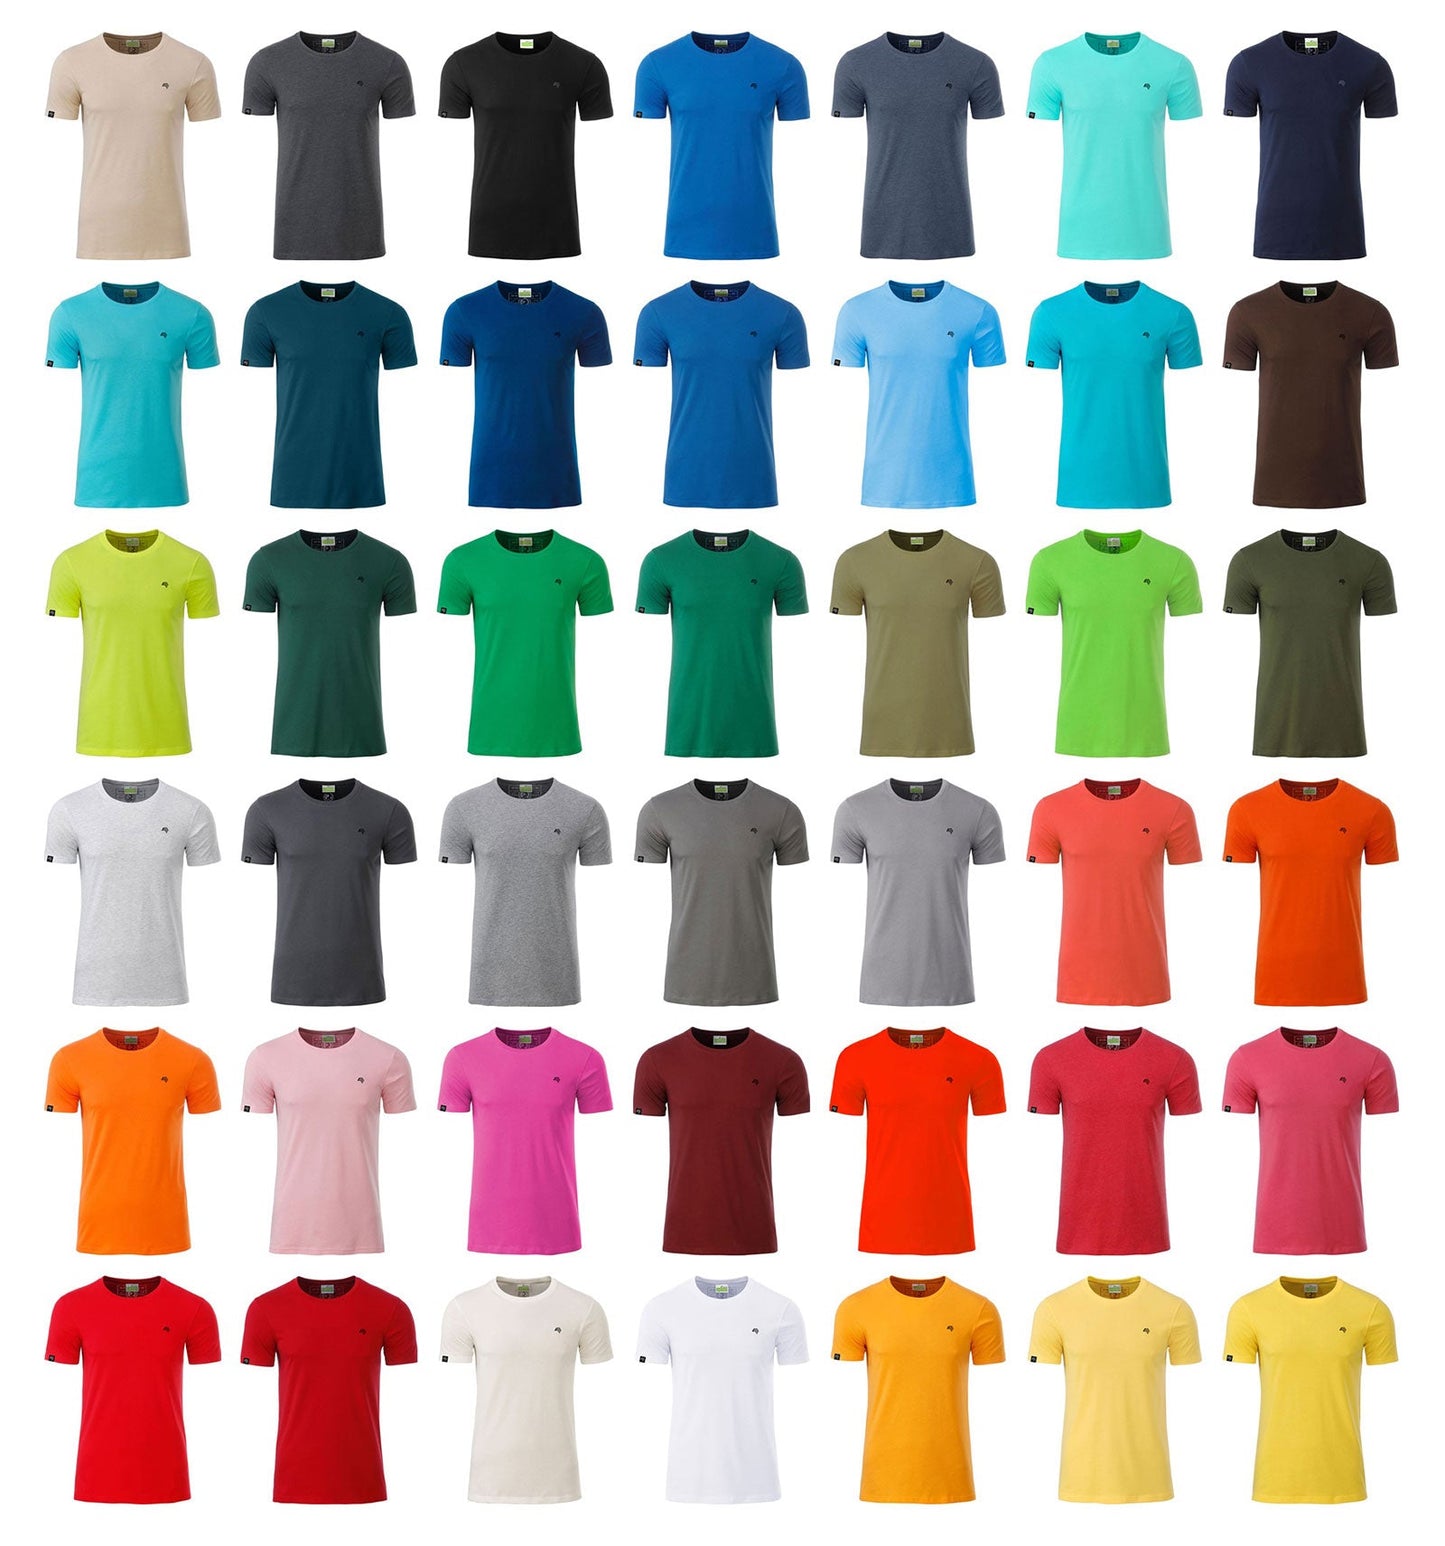 JAN 8008 ― Herren Bio-Baumwolle T-Shirt - Olive Grün